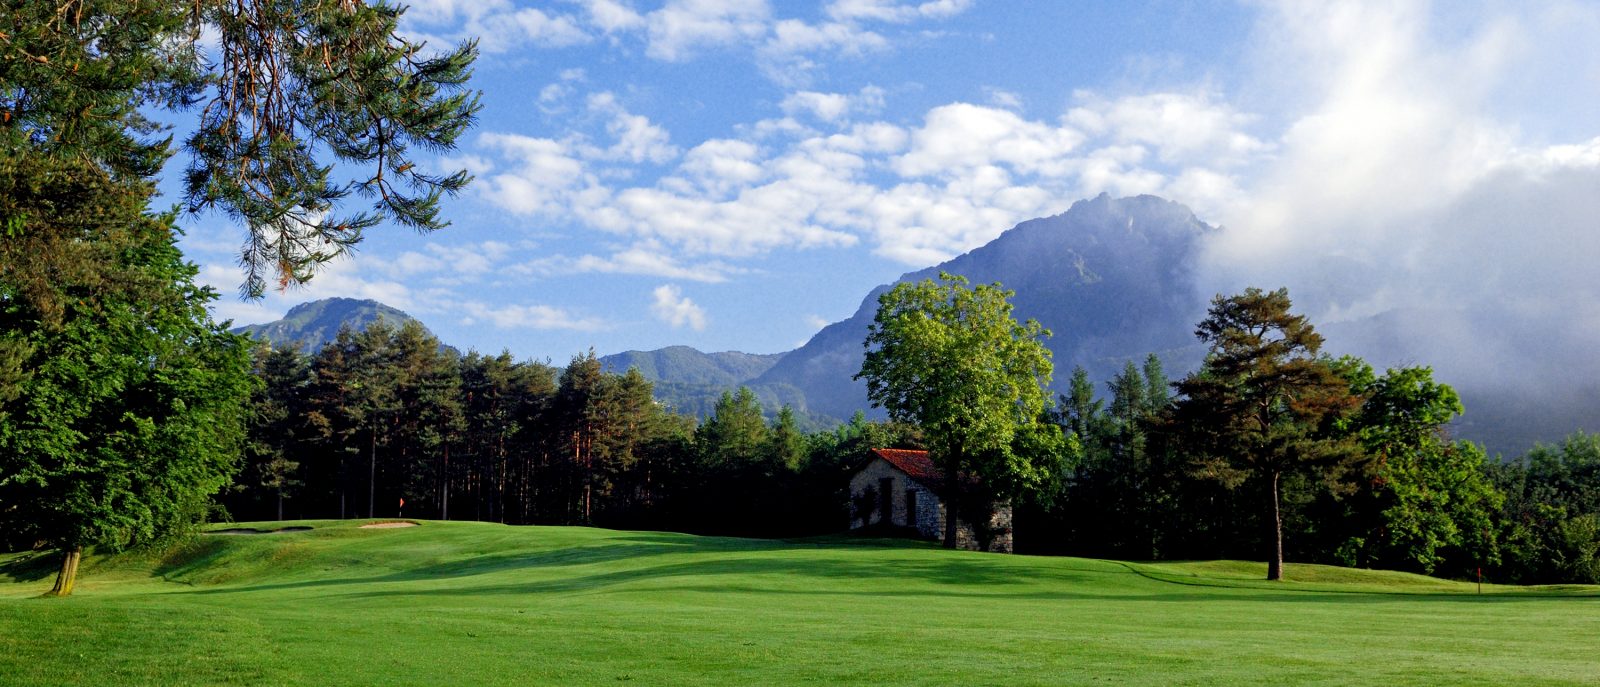 Menaggio-and-Cadenabbia-golf-club-Italy golf